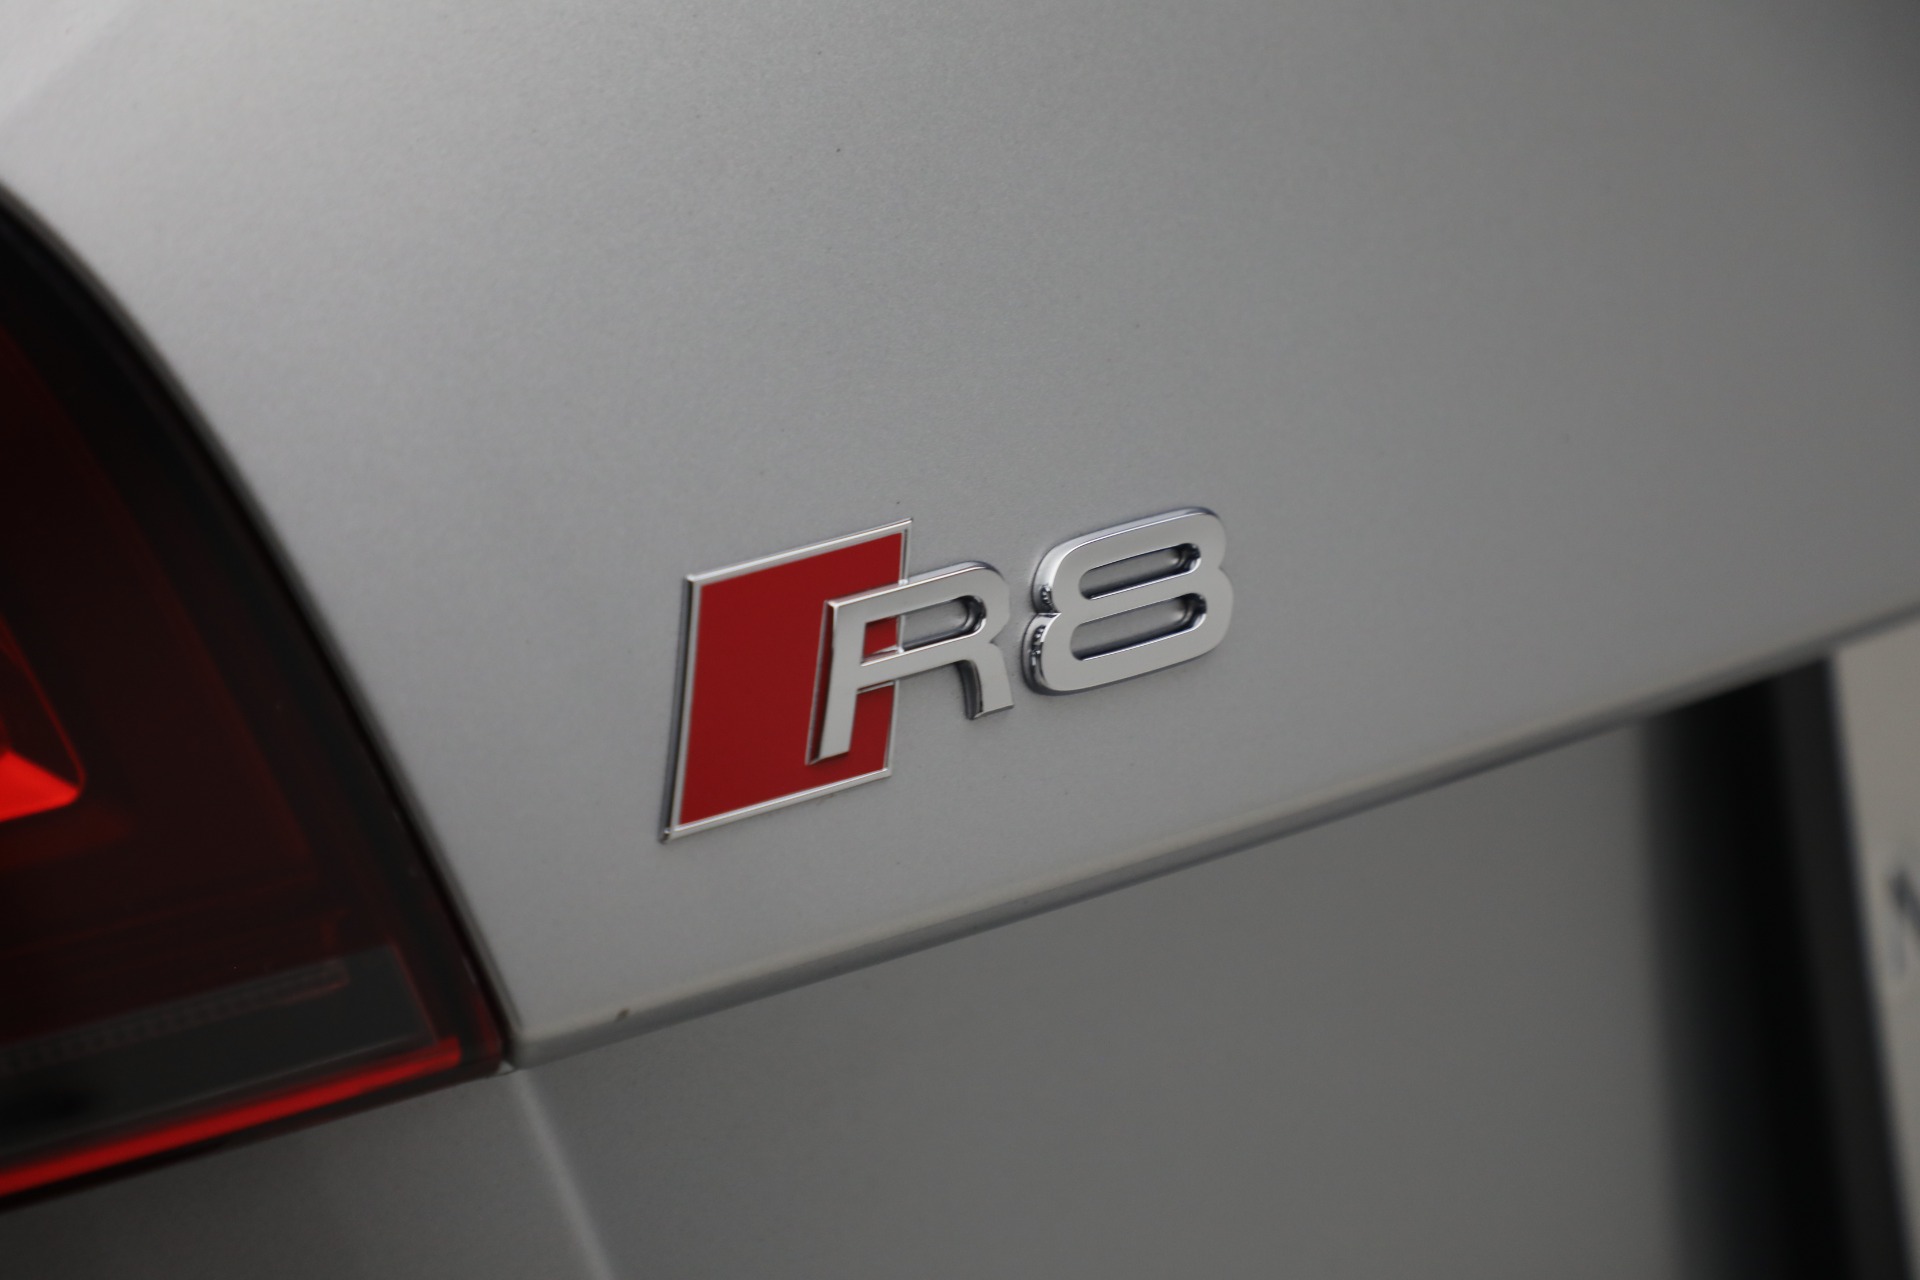 Used 2015 Audi R8 42 quattro Spyder